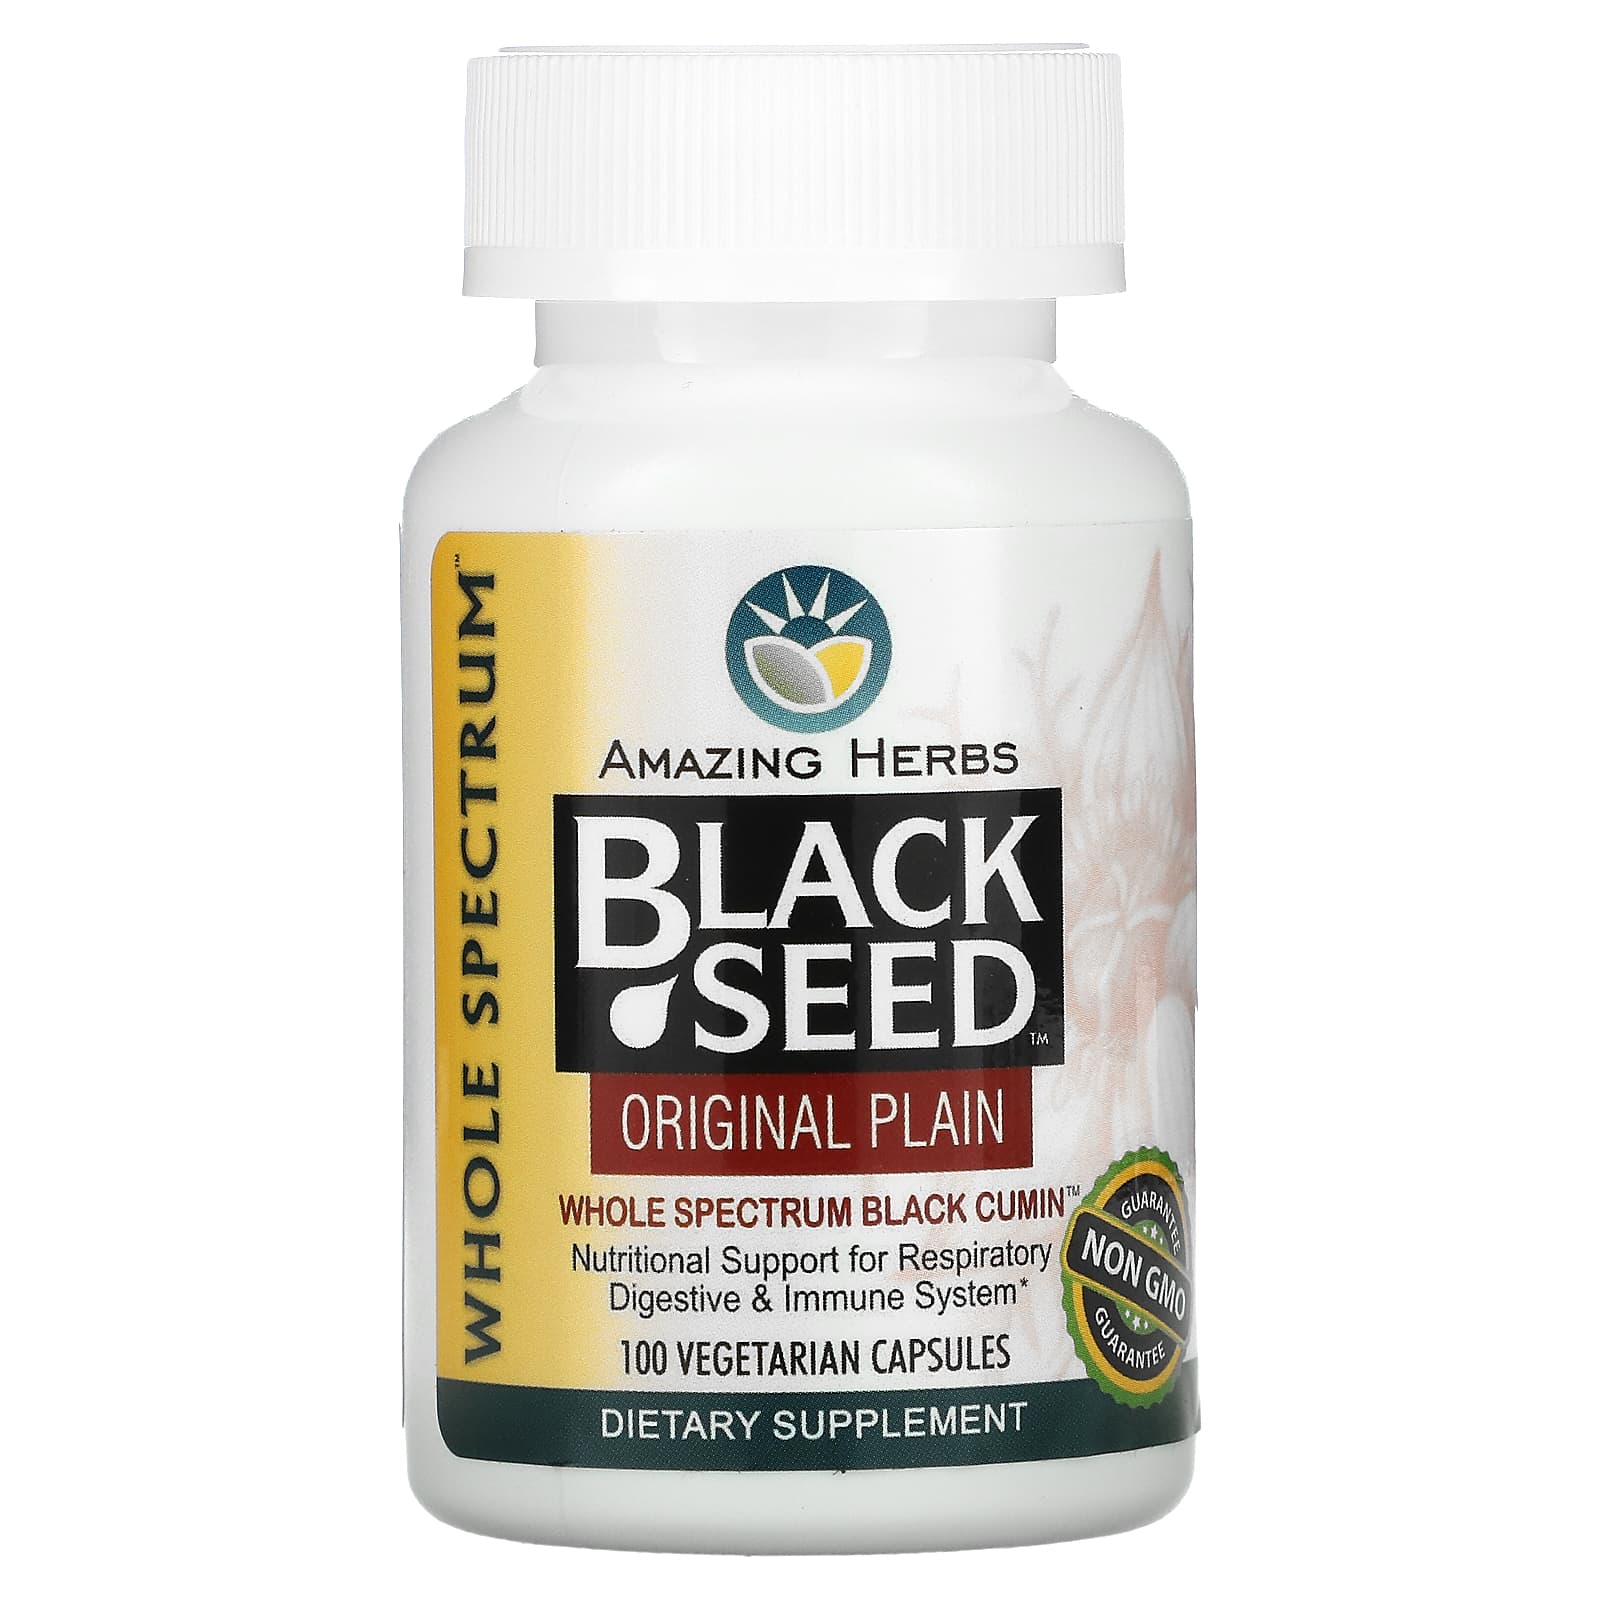 Amazing Herbs Черный тмин оригинальный чистый 100 вегетарианских капсул amazing herbs black seed высокоэффективный чеснок 100 вегетарианских капсул